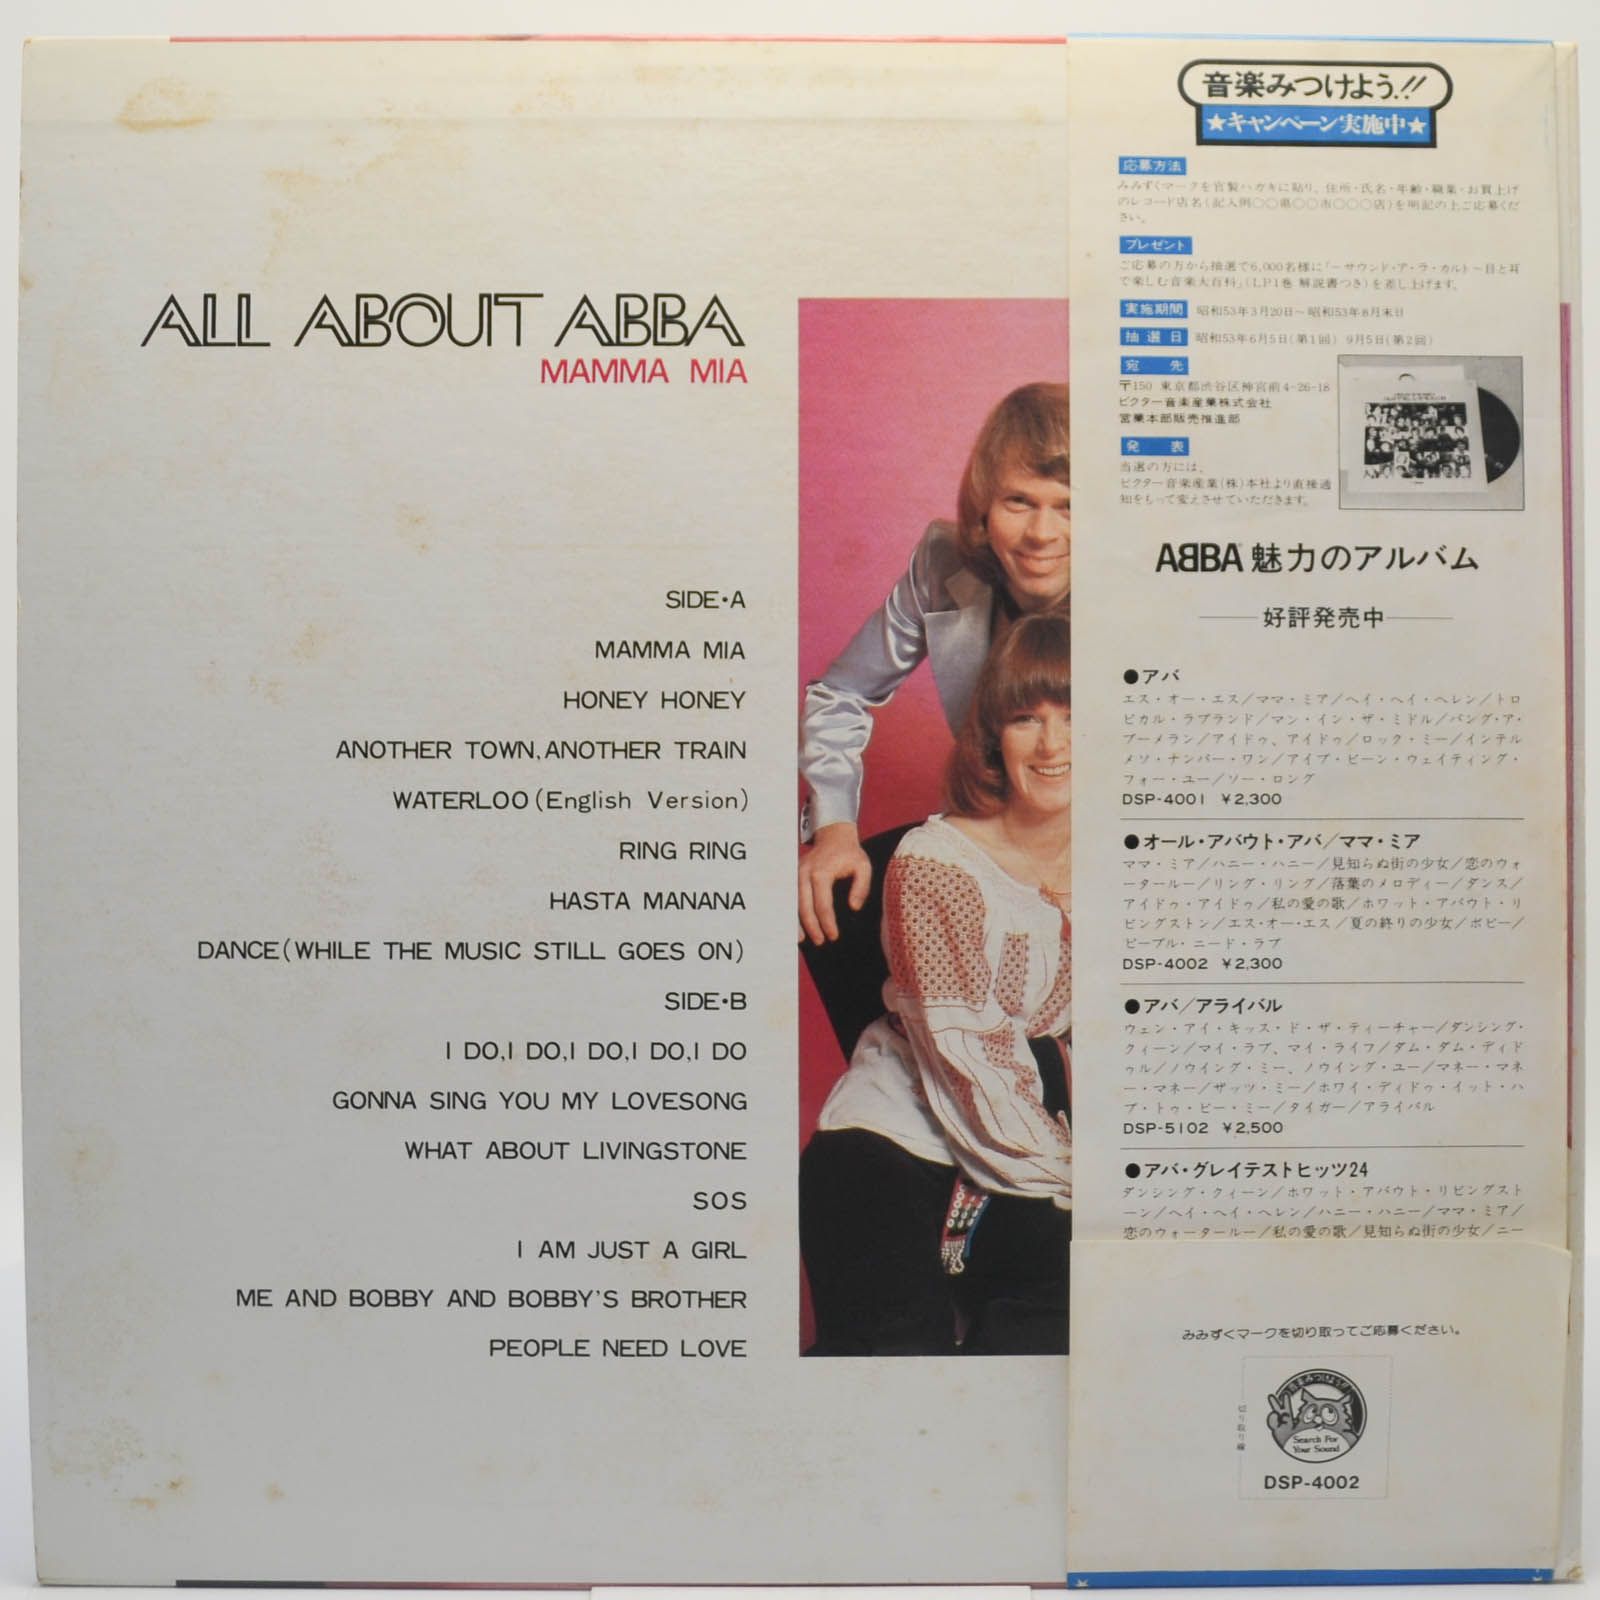 ABBA — All About ABBA / Mamma Mia, 1976